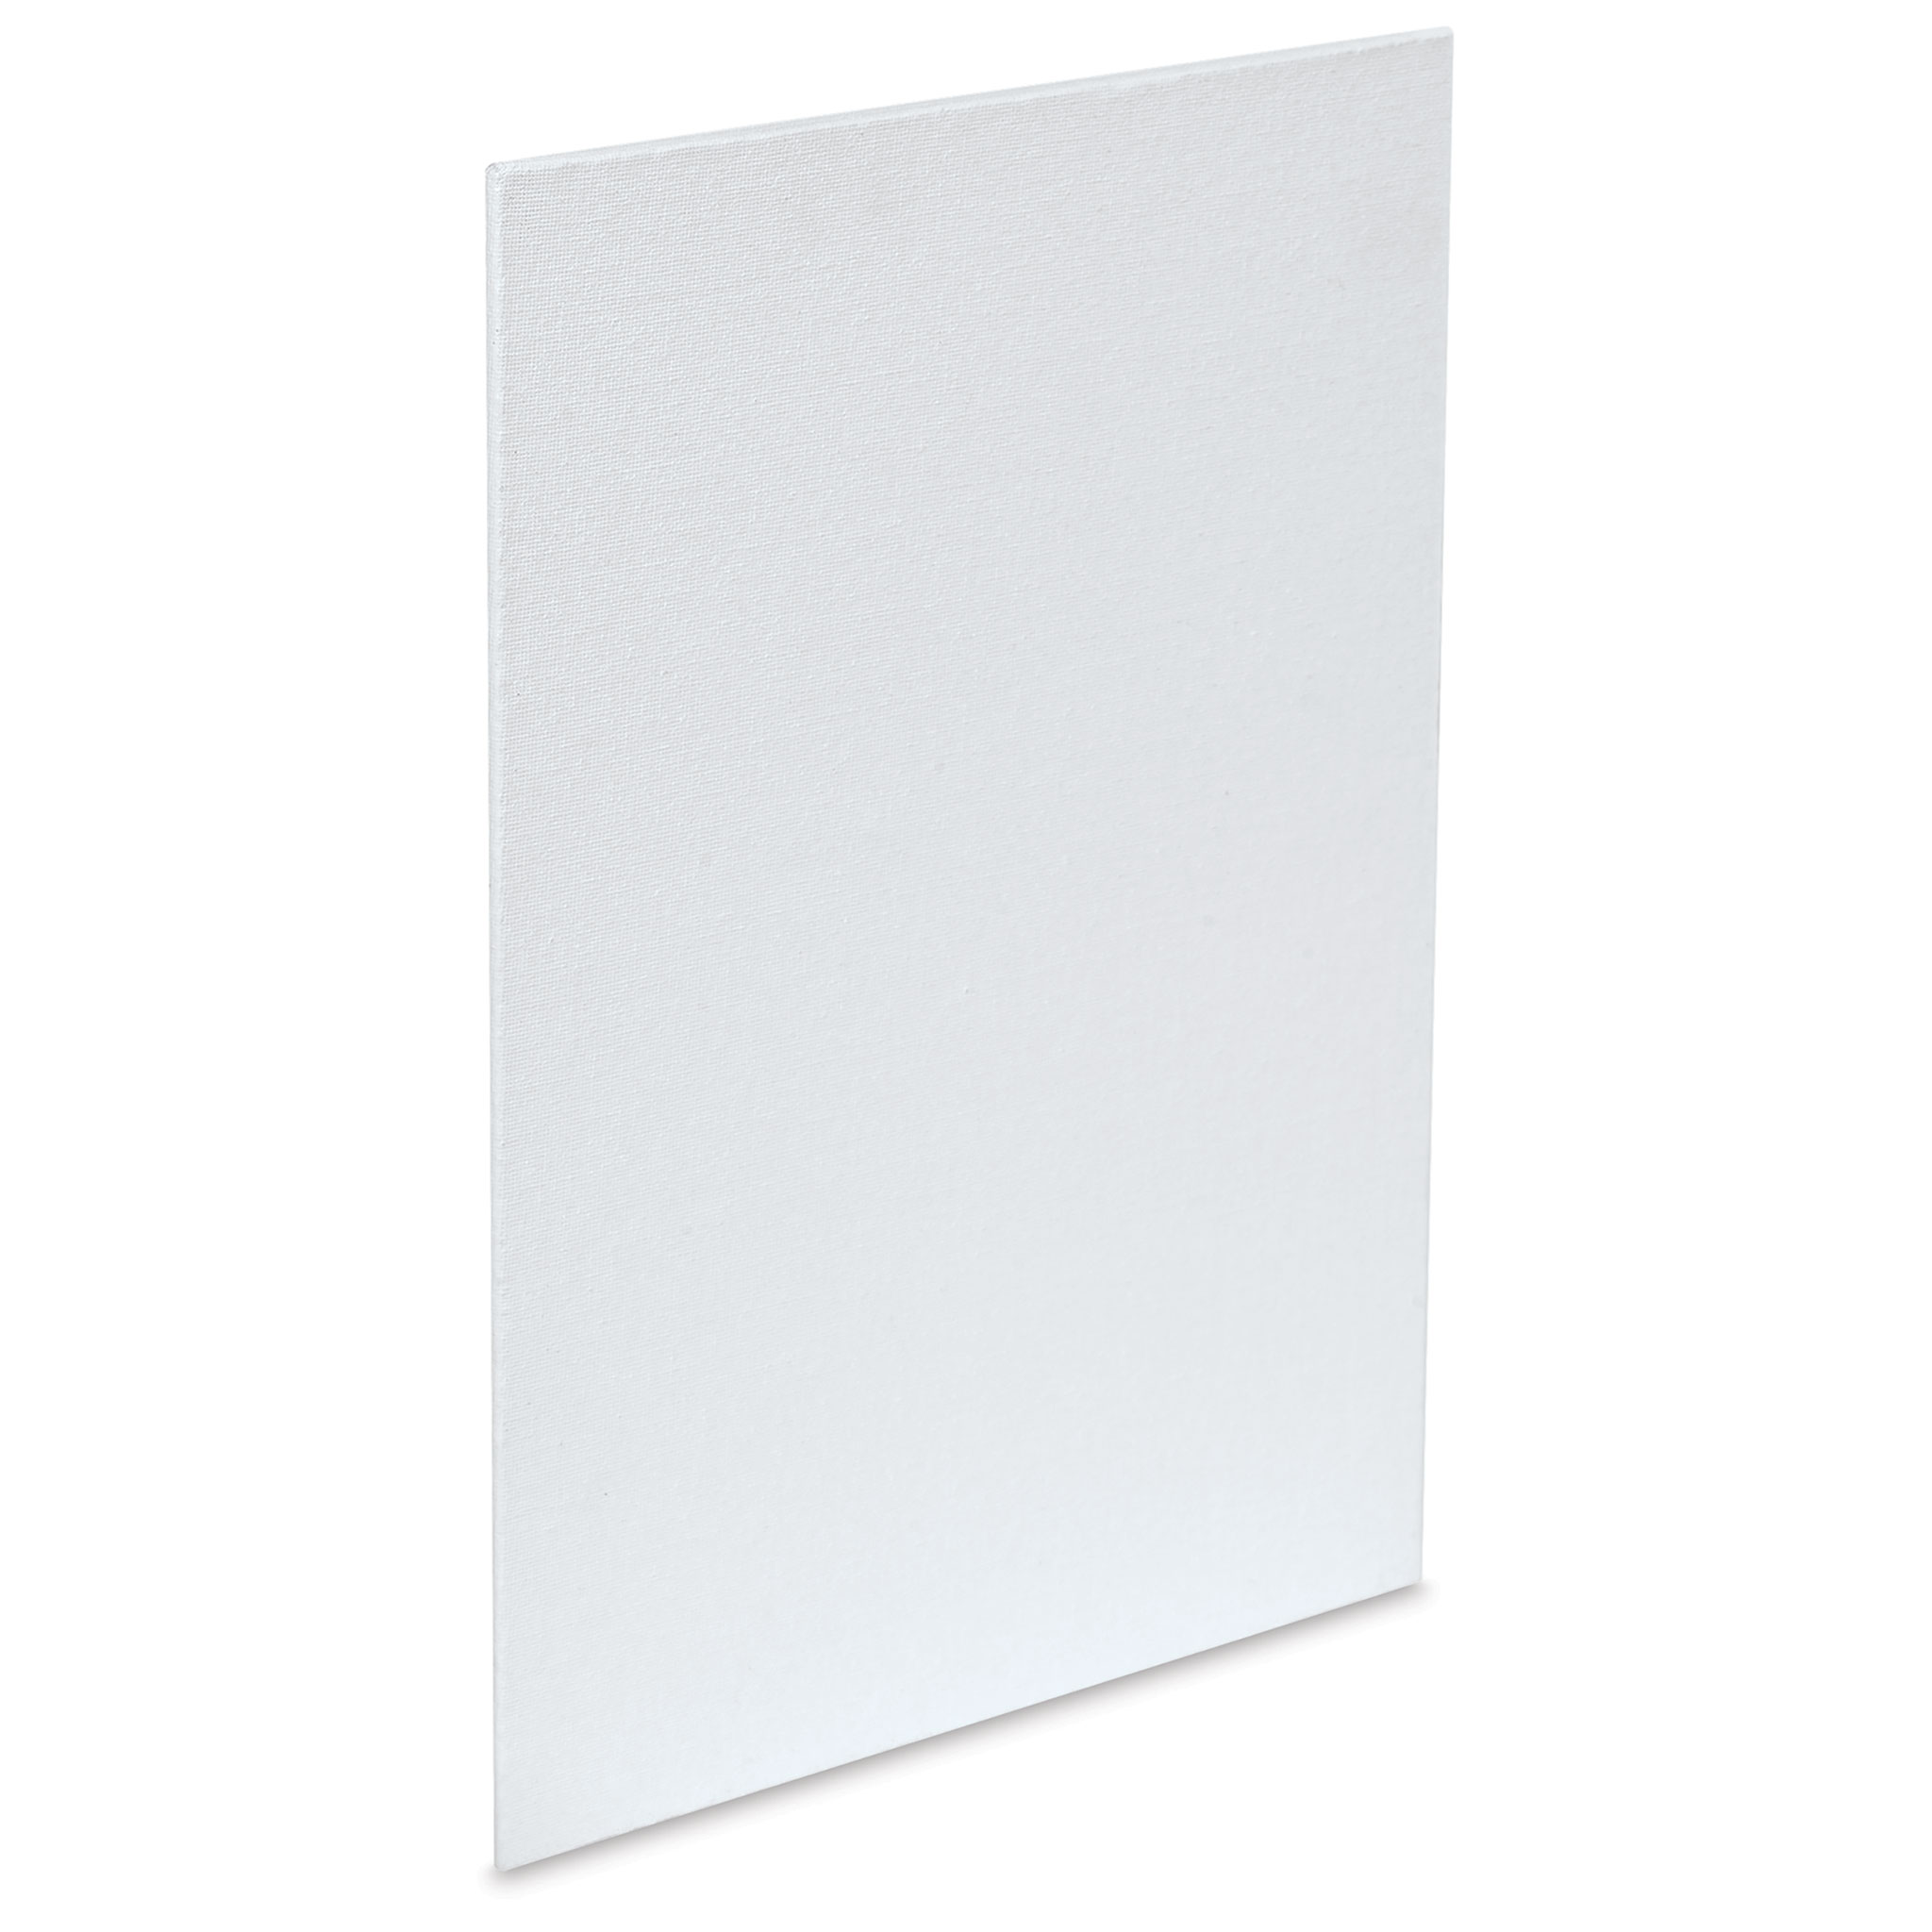 Sax Genuine Canvas Panel, 9 x 12 Inches, White